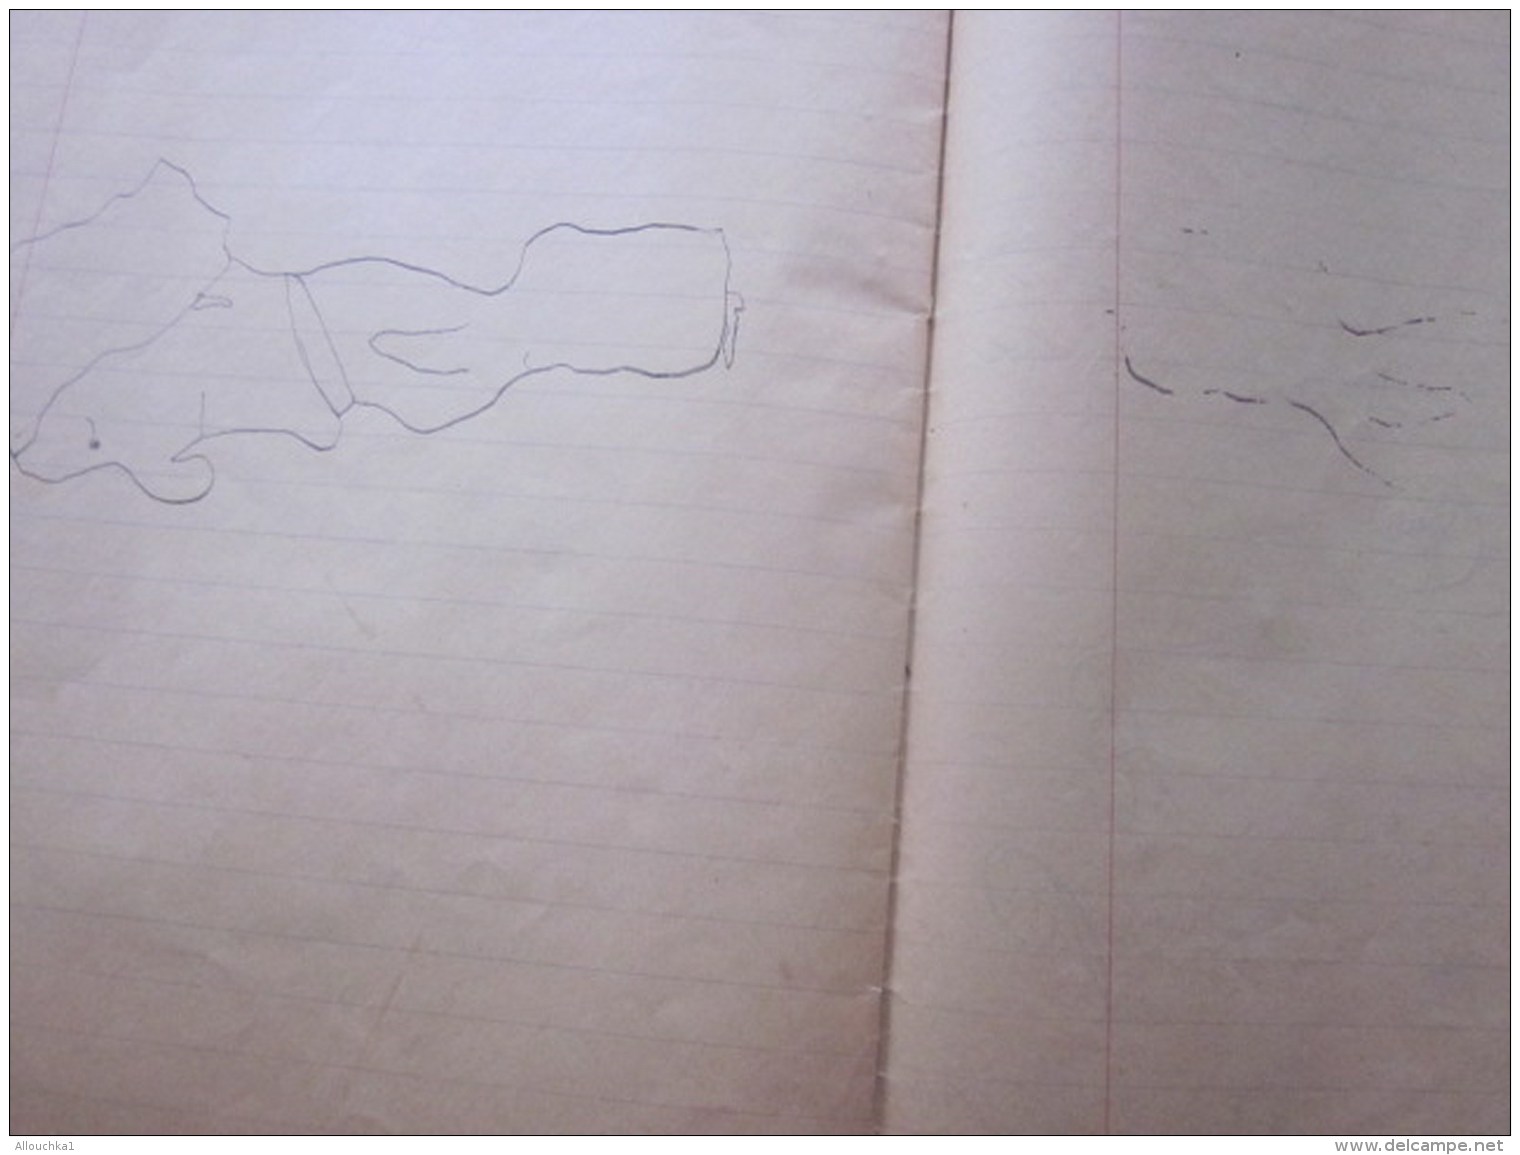 1944 Marseille Cahier d&rsquo;école Manuscrit d&rsquo;écolier Apprentissage écriture Porte Plume à encre dessins au cray